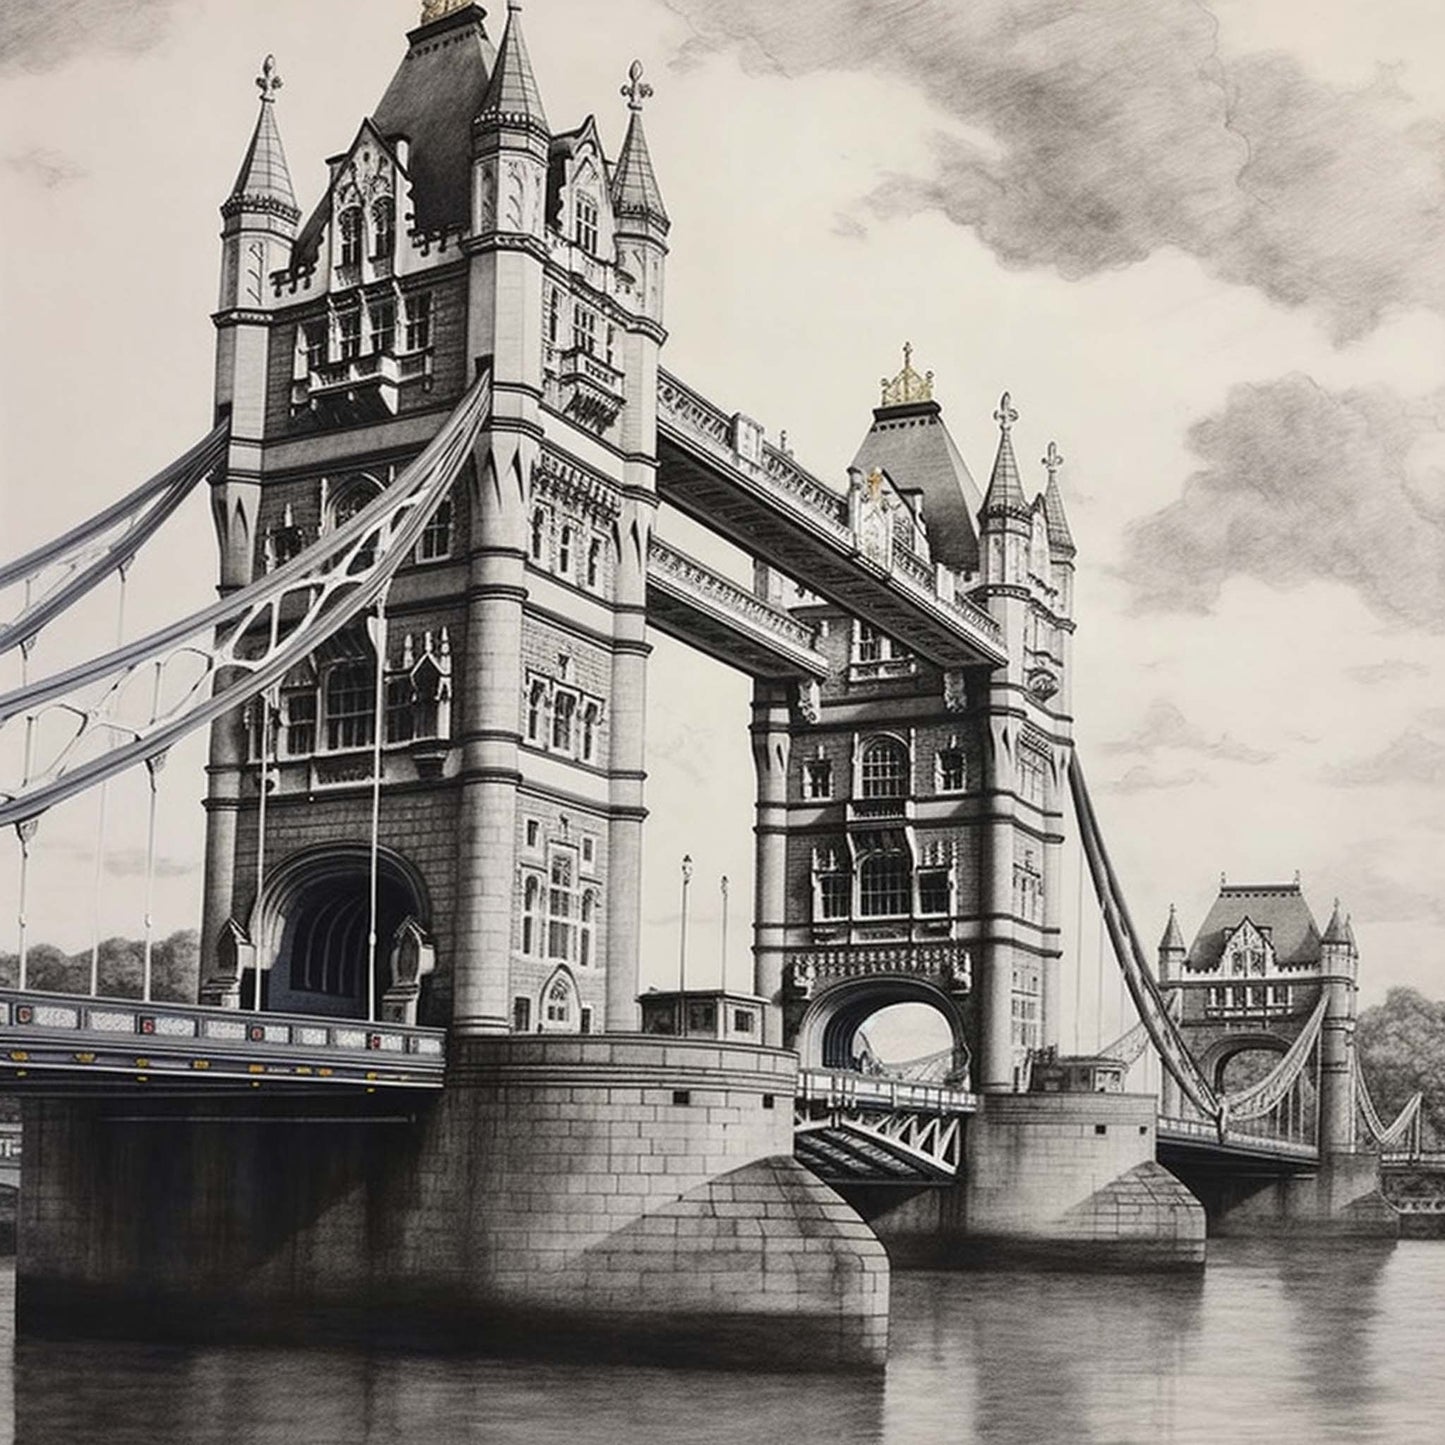 London Tower Bridge - Wandbild in der Stilrichtung einer Zeichnung